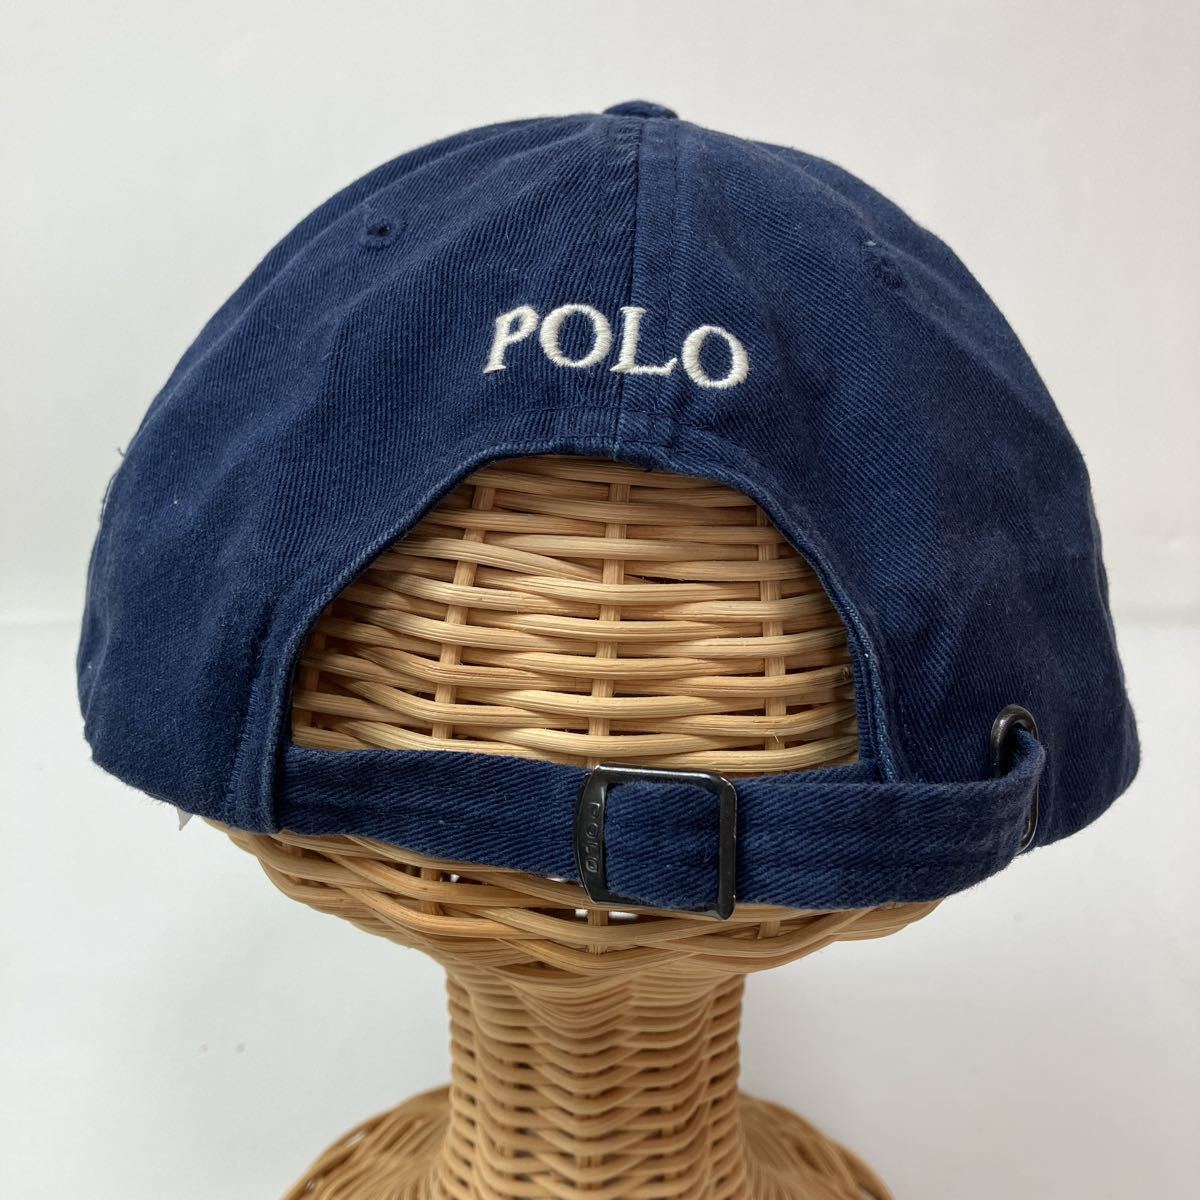 POLO RALPH LAUREN ポロ ラルフローレン キャップ 帽子 cap フリーサイズ FREE 紺 ネイビー カジュアル スポーツ トレーニング シンプルの画像3